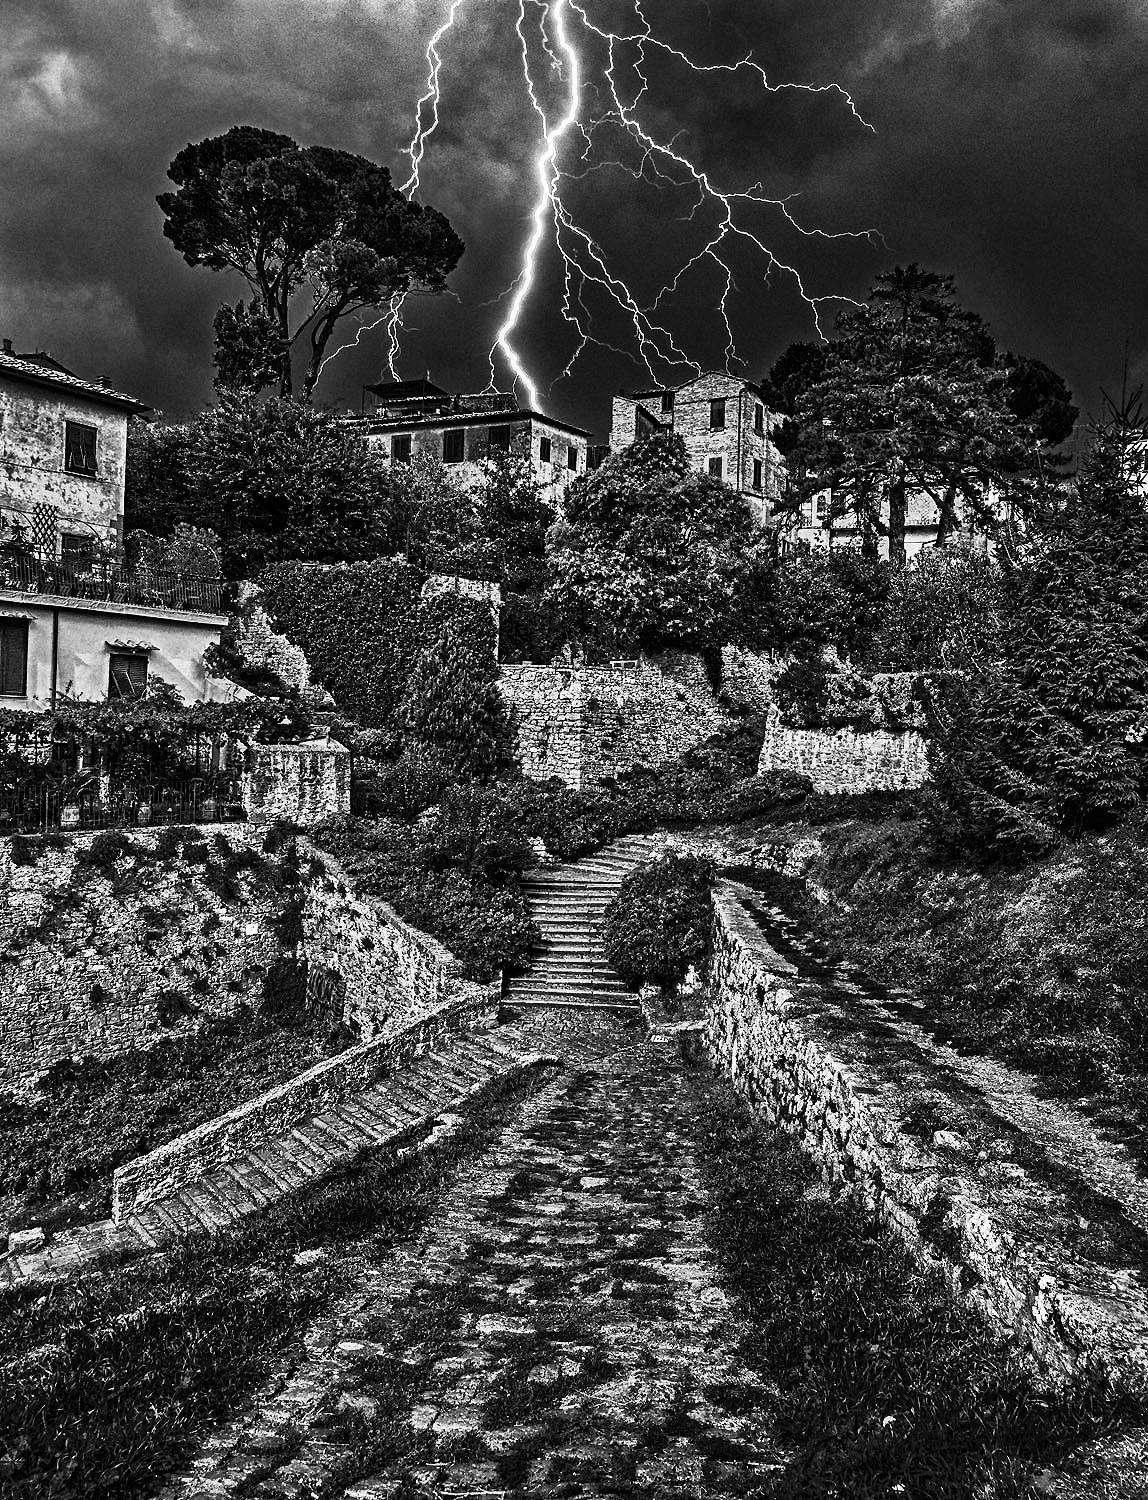 Storm, Volterra, Italy, 2015 von Hank Gans ist eine 24" x 18" große Schwarz-Weiß-Landschaftsfotografie, die einen Sturm in Volterra, einer ummauerten Stadt südwestlich von Florenz in der Toskana, festhält. 

Dreieckige Formen bestimmen das Foto,